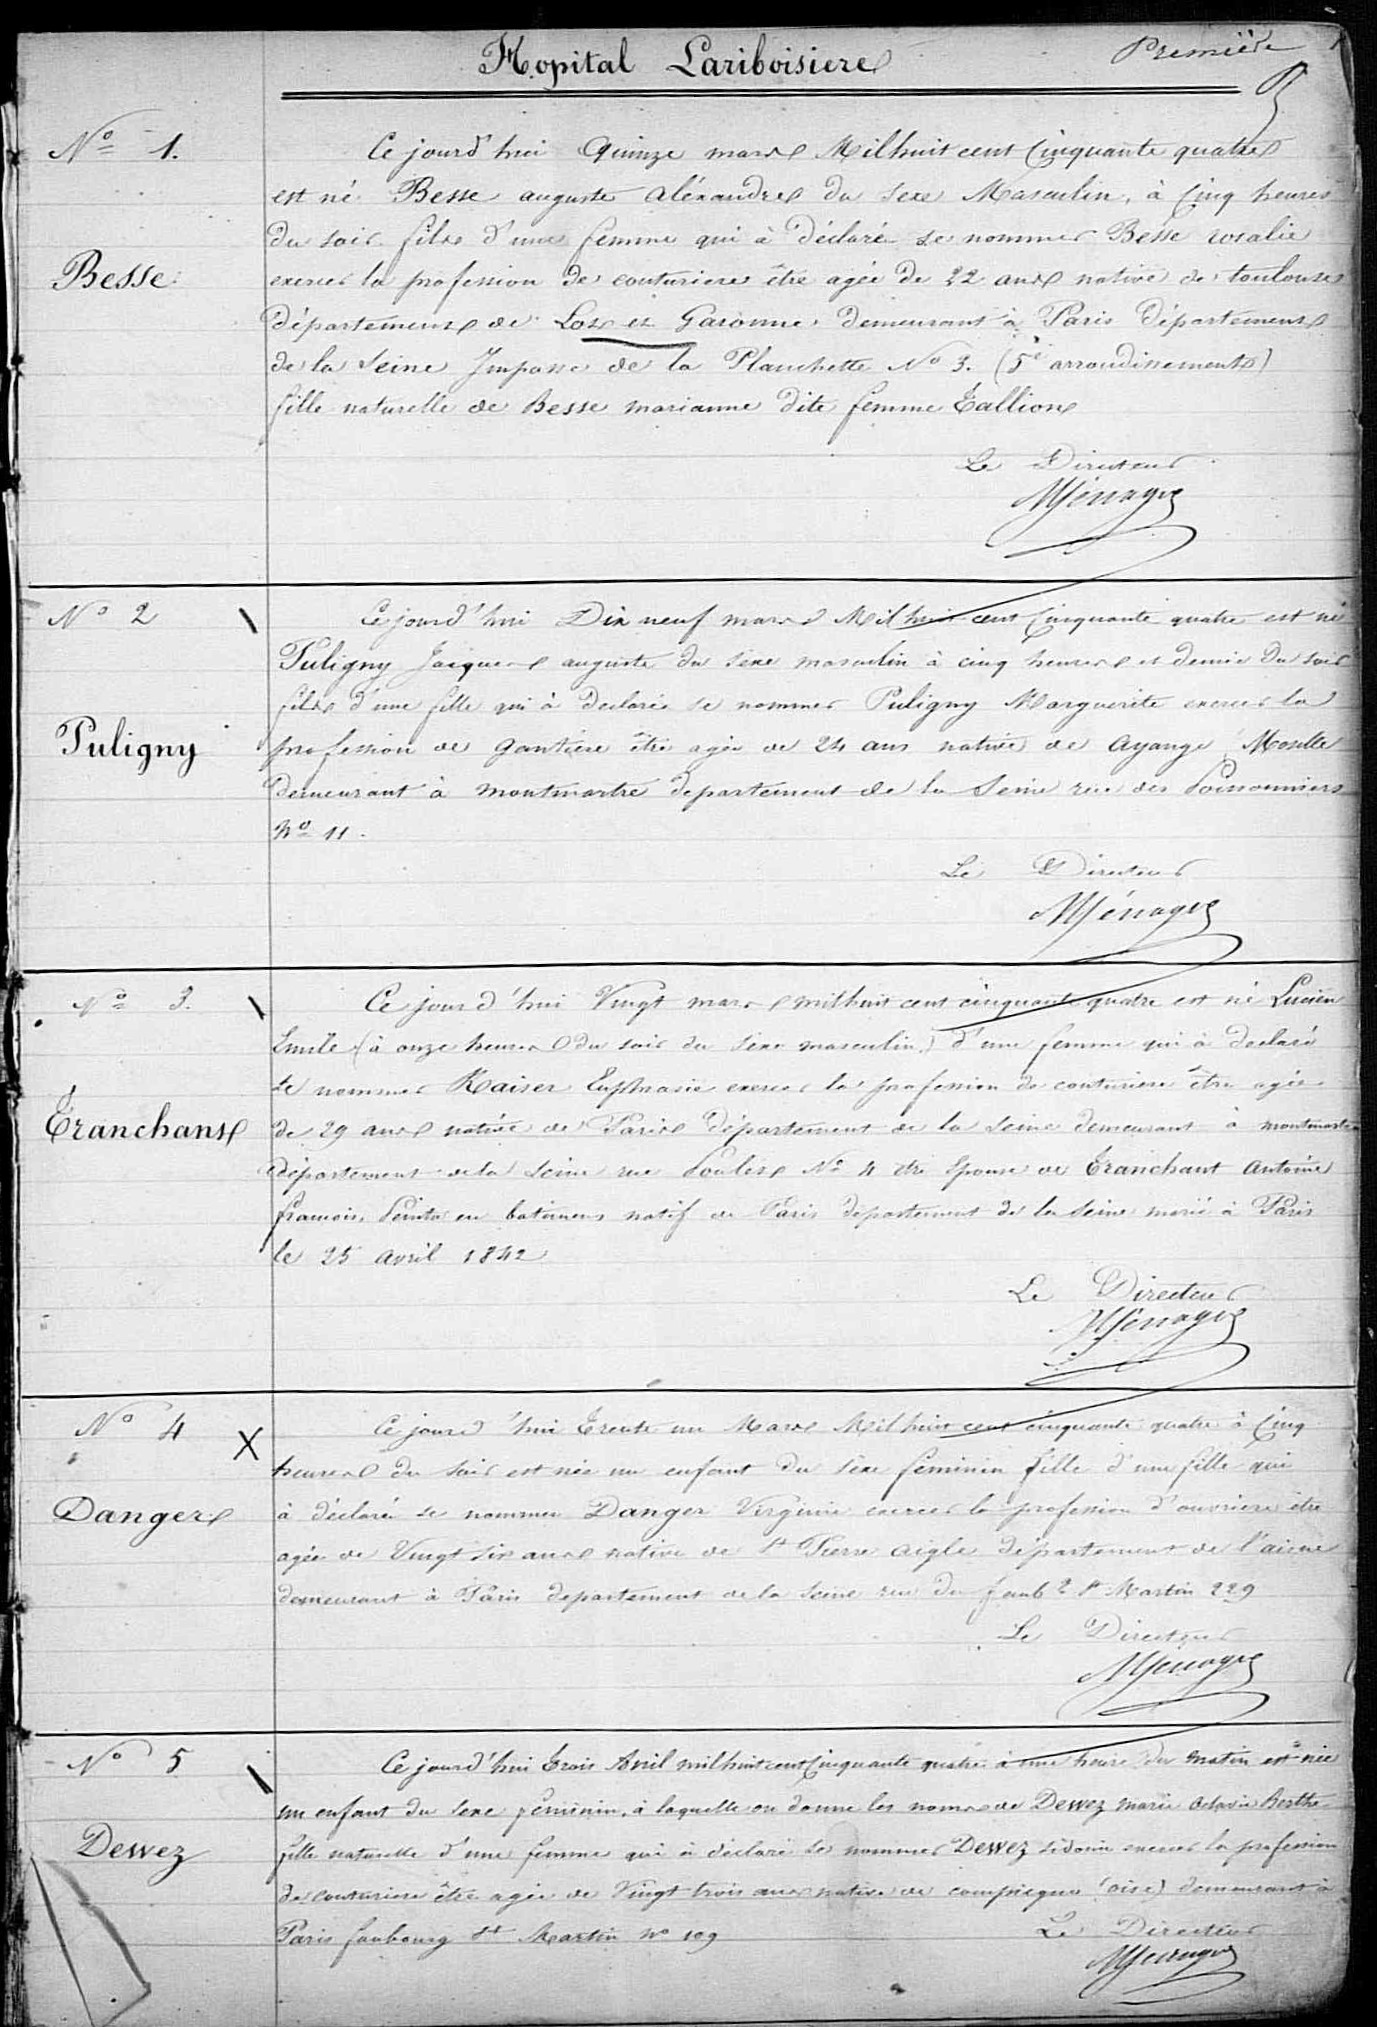 Registre des naissances de l’hôpital Lariboisière, 1854-1856. (Archives AP-HP, LRB/5/Q/1).